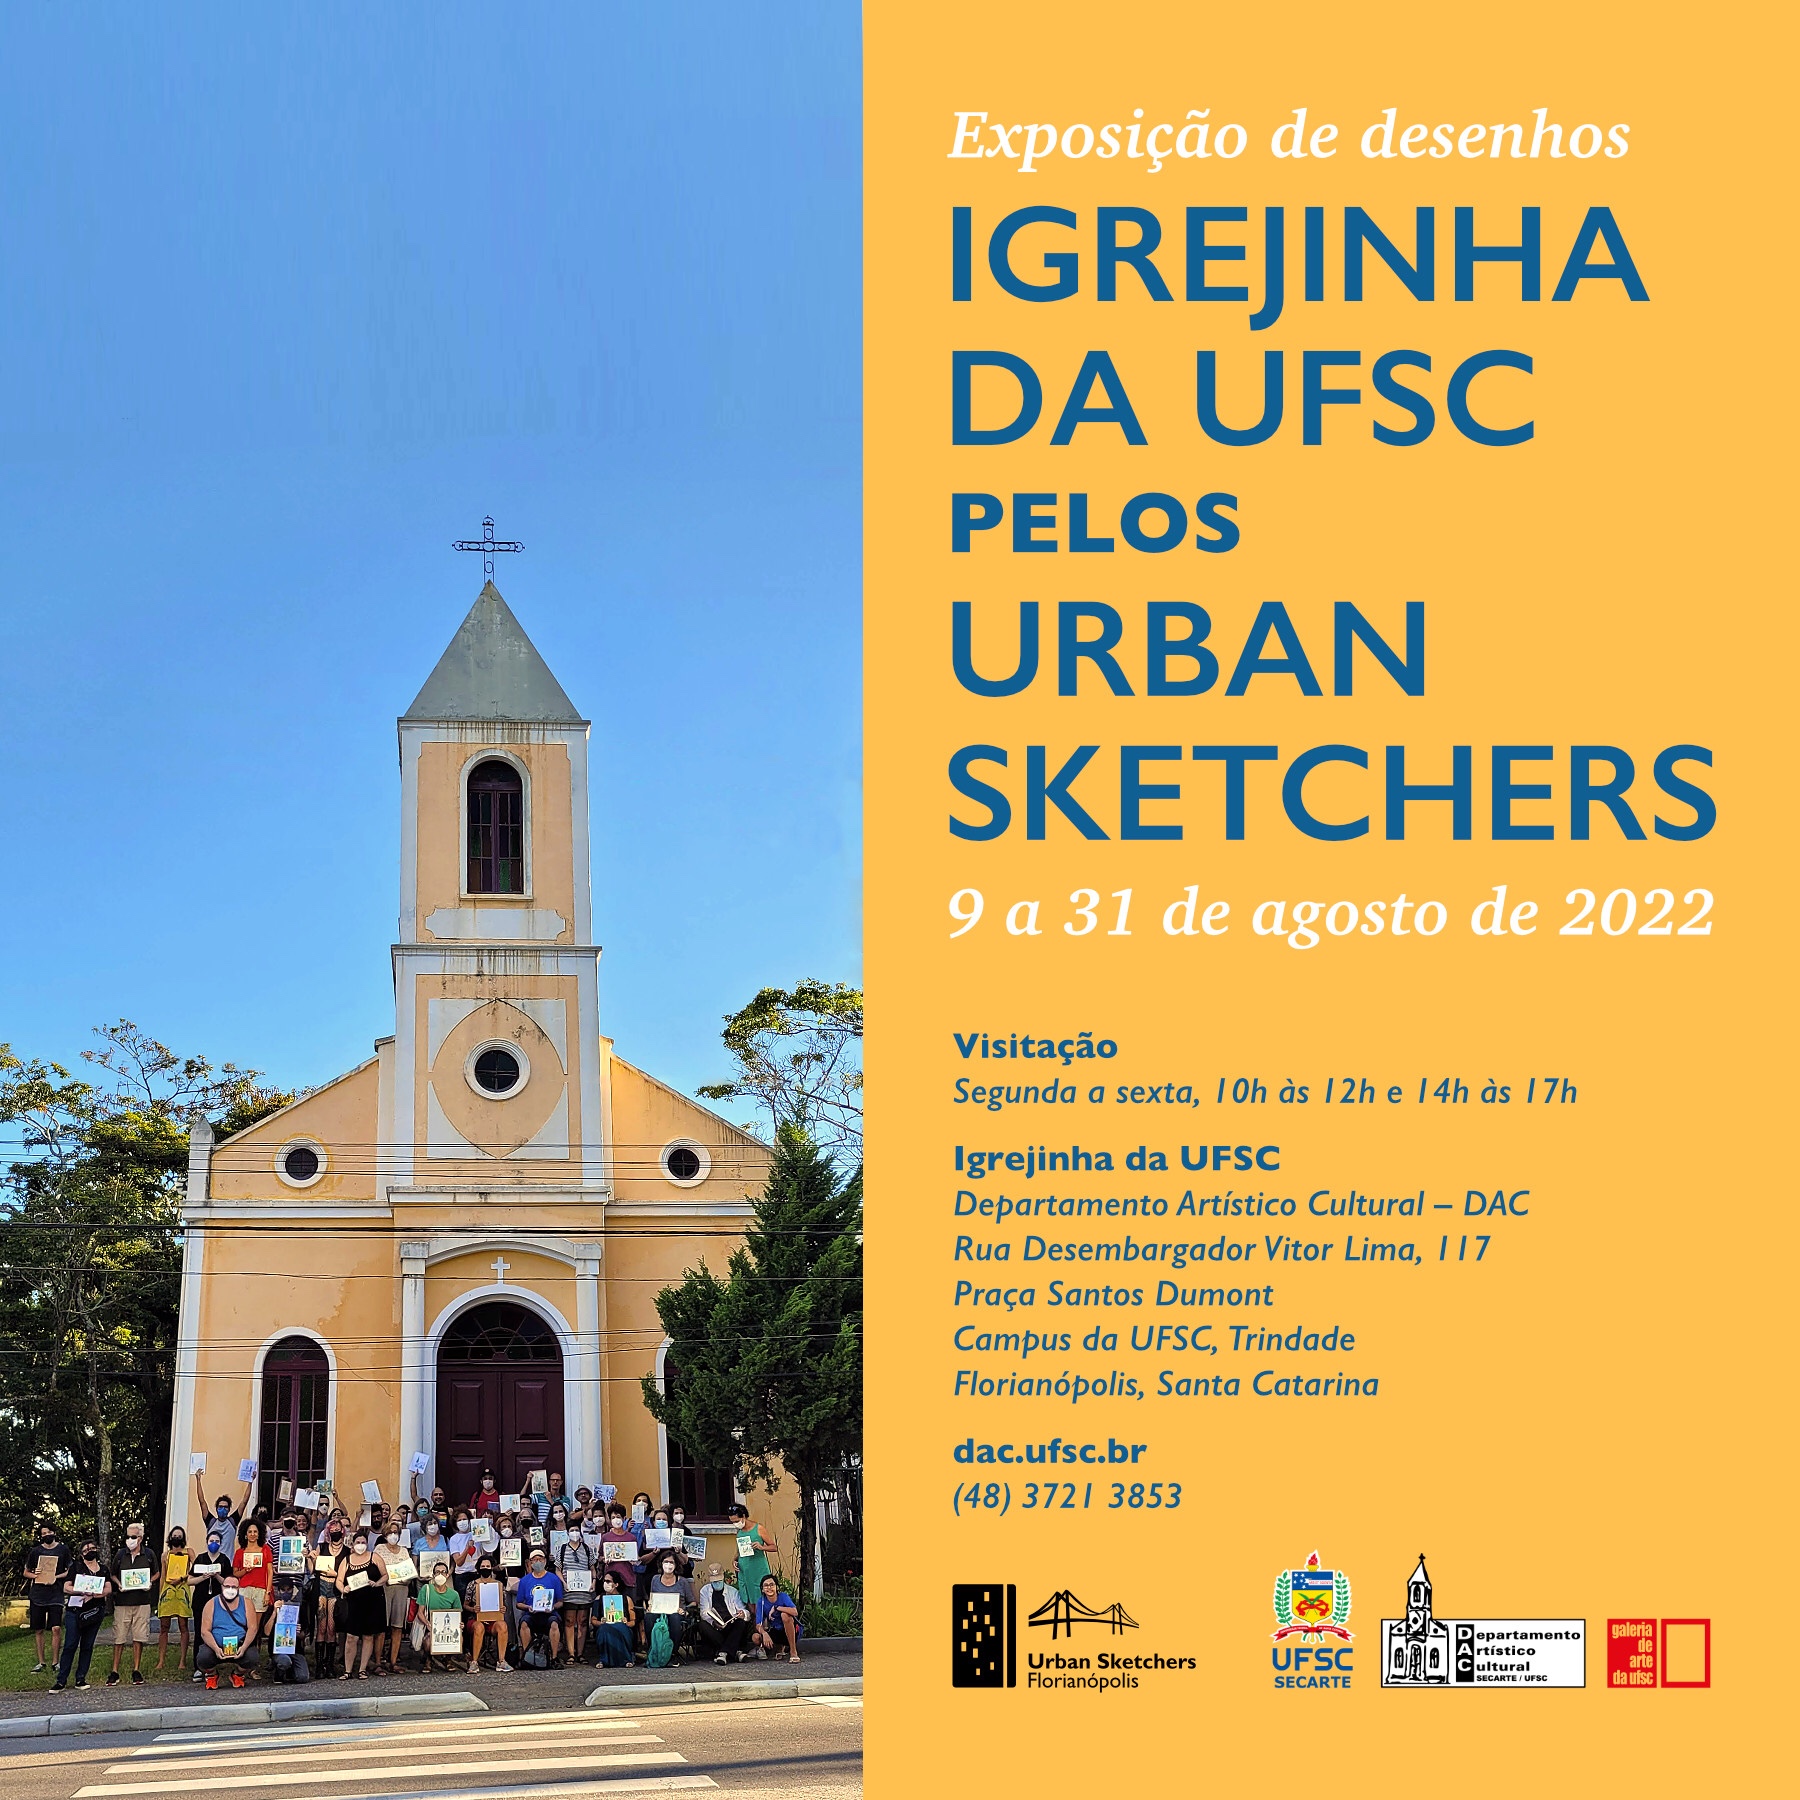 Convite da exposição “Igrejinha da UFSC pelos Urban Sketchers”, de 9 a 31 de agosto na Igrejinha da UFSC